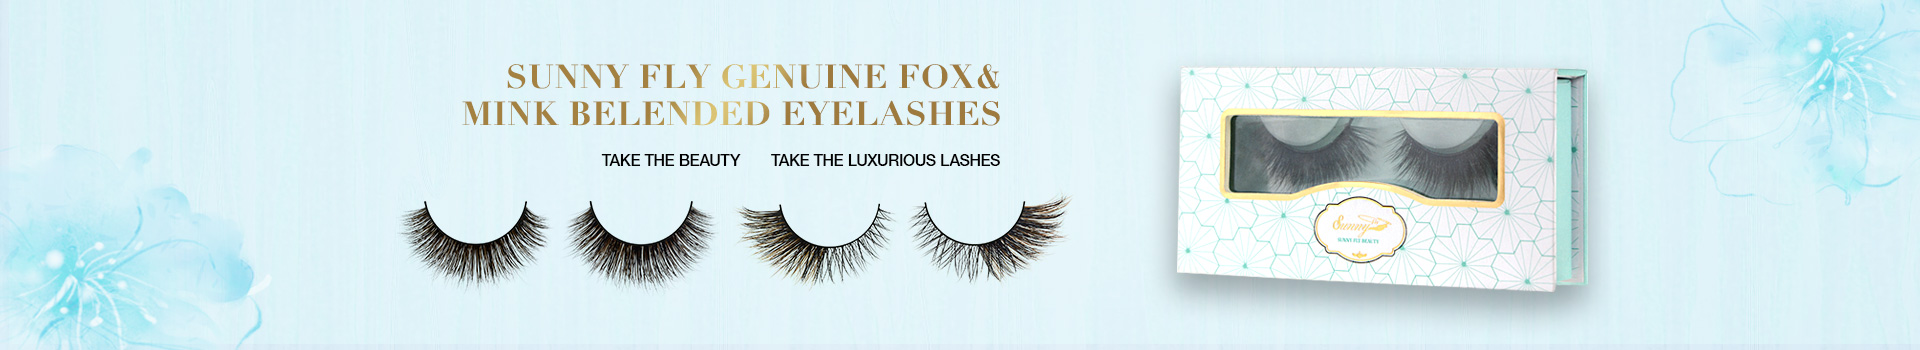 Fox & Mink Fur Blended Eyelashes